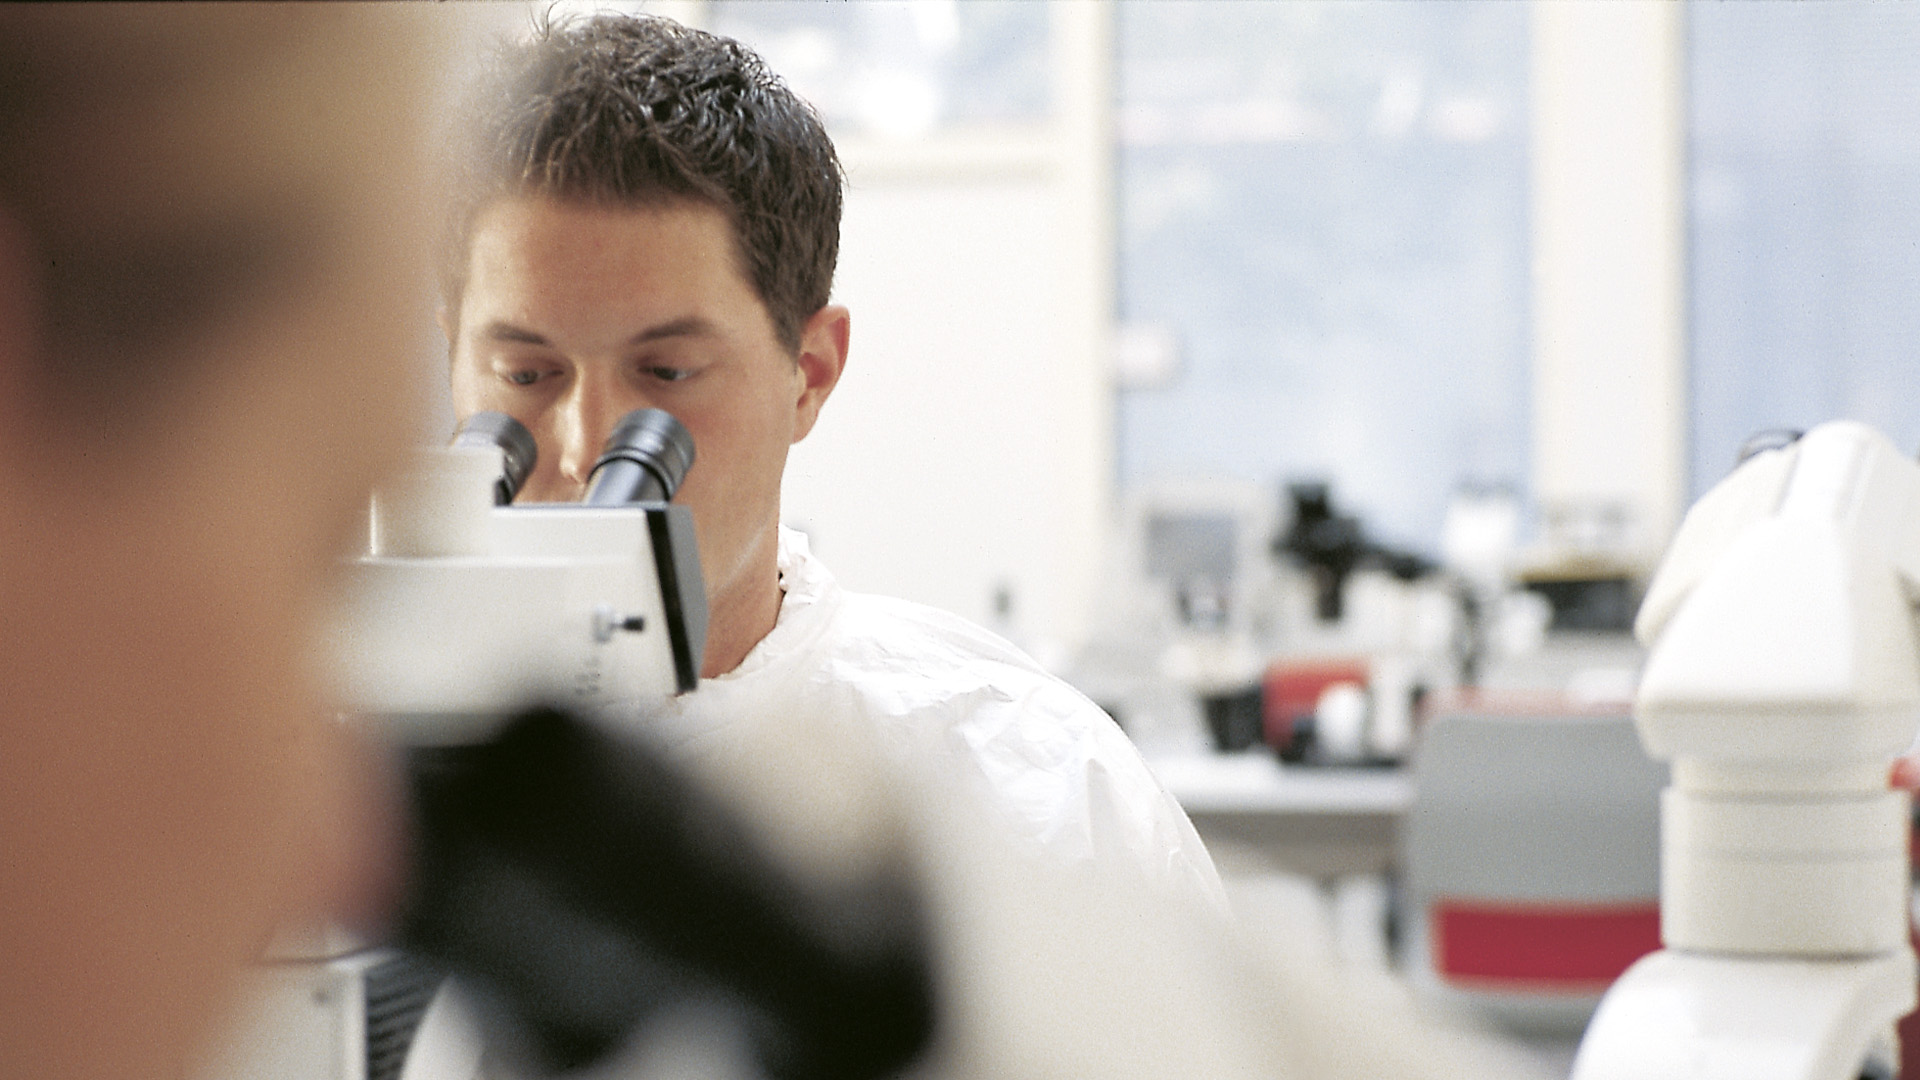 L'efficienza del lavoro al microscopio consente ai patologi di eseguire diagnosi accurate e tempestive.